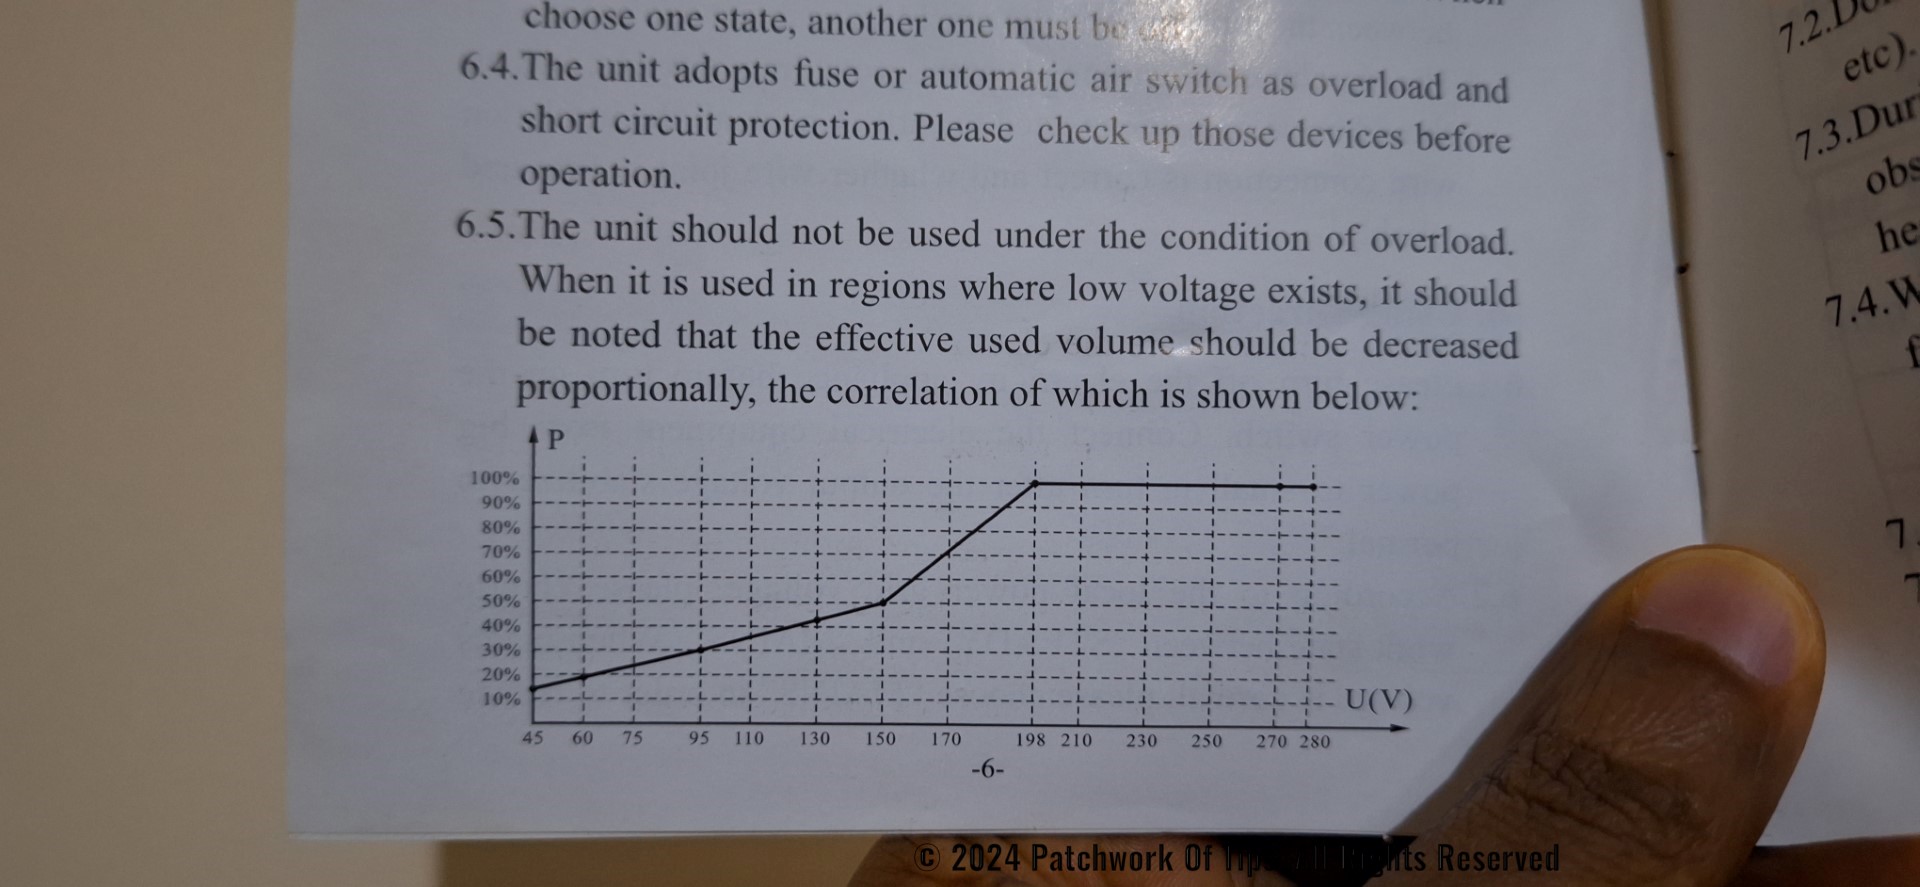 PRAG Stabilizer Overload Limit Per Input Voltage